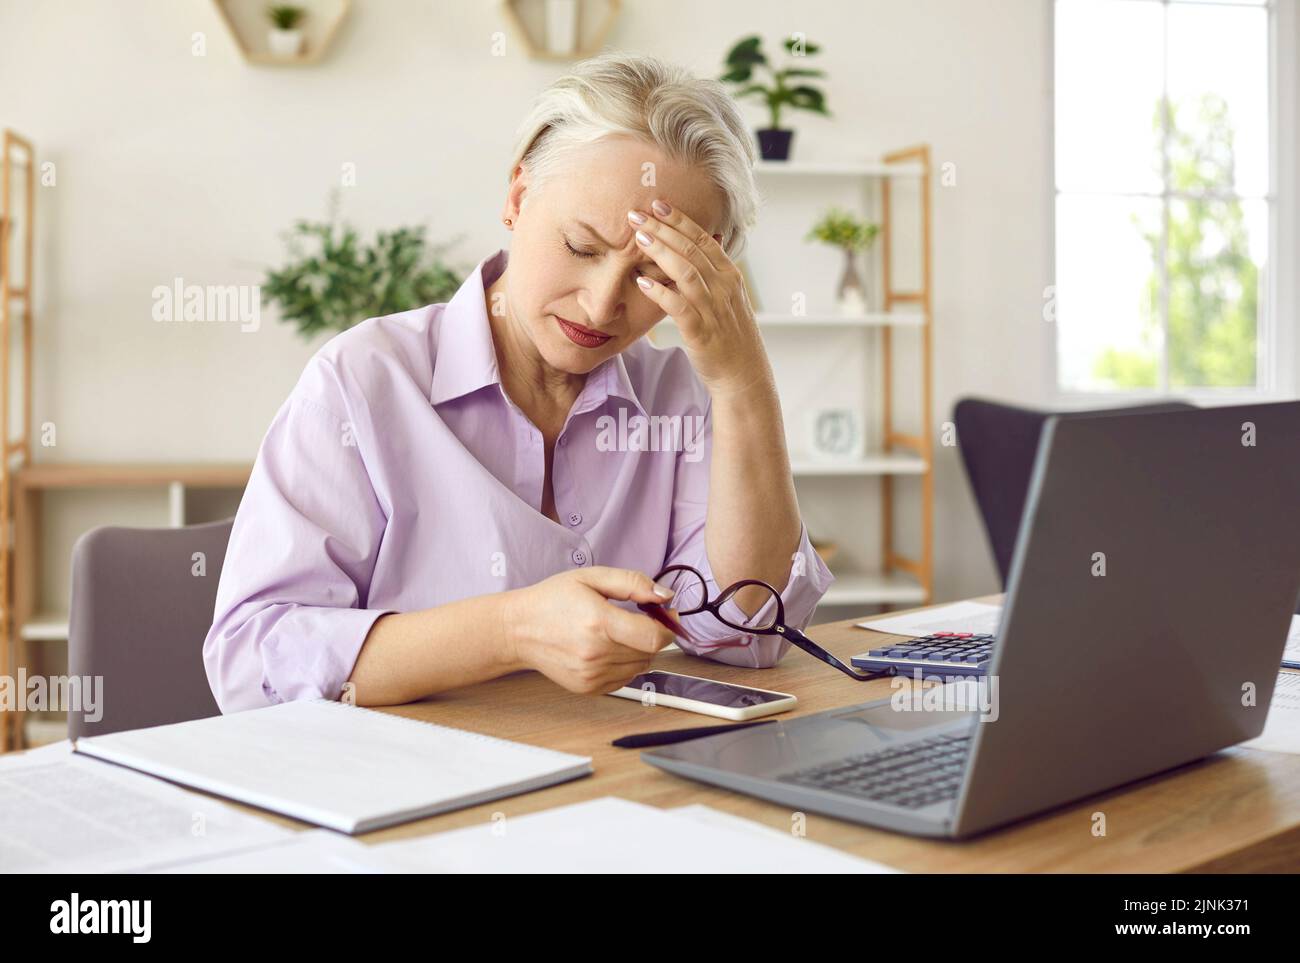 Une femme mature se sent fatiguée et souffre d'un mal de tête après avoir travaillé sur son ordinateur portable Banque D'Images